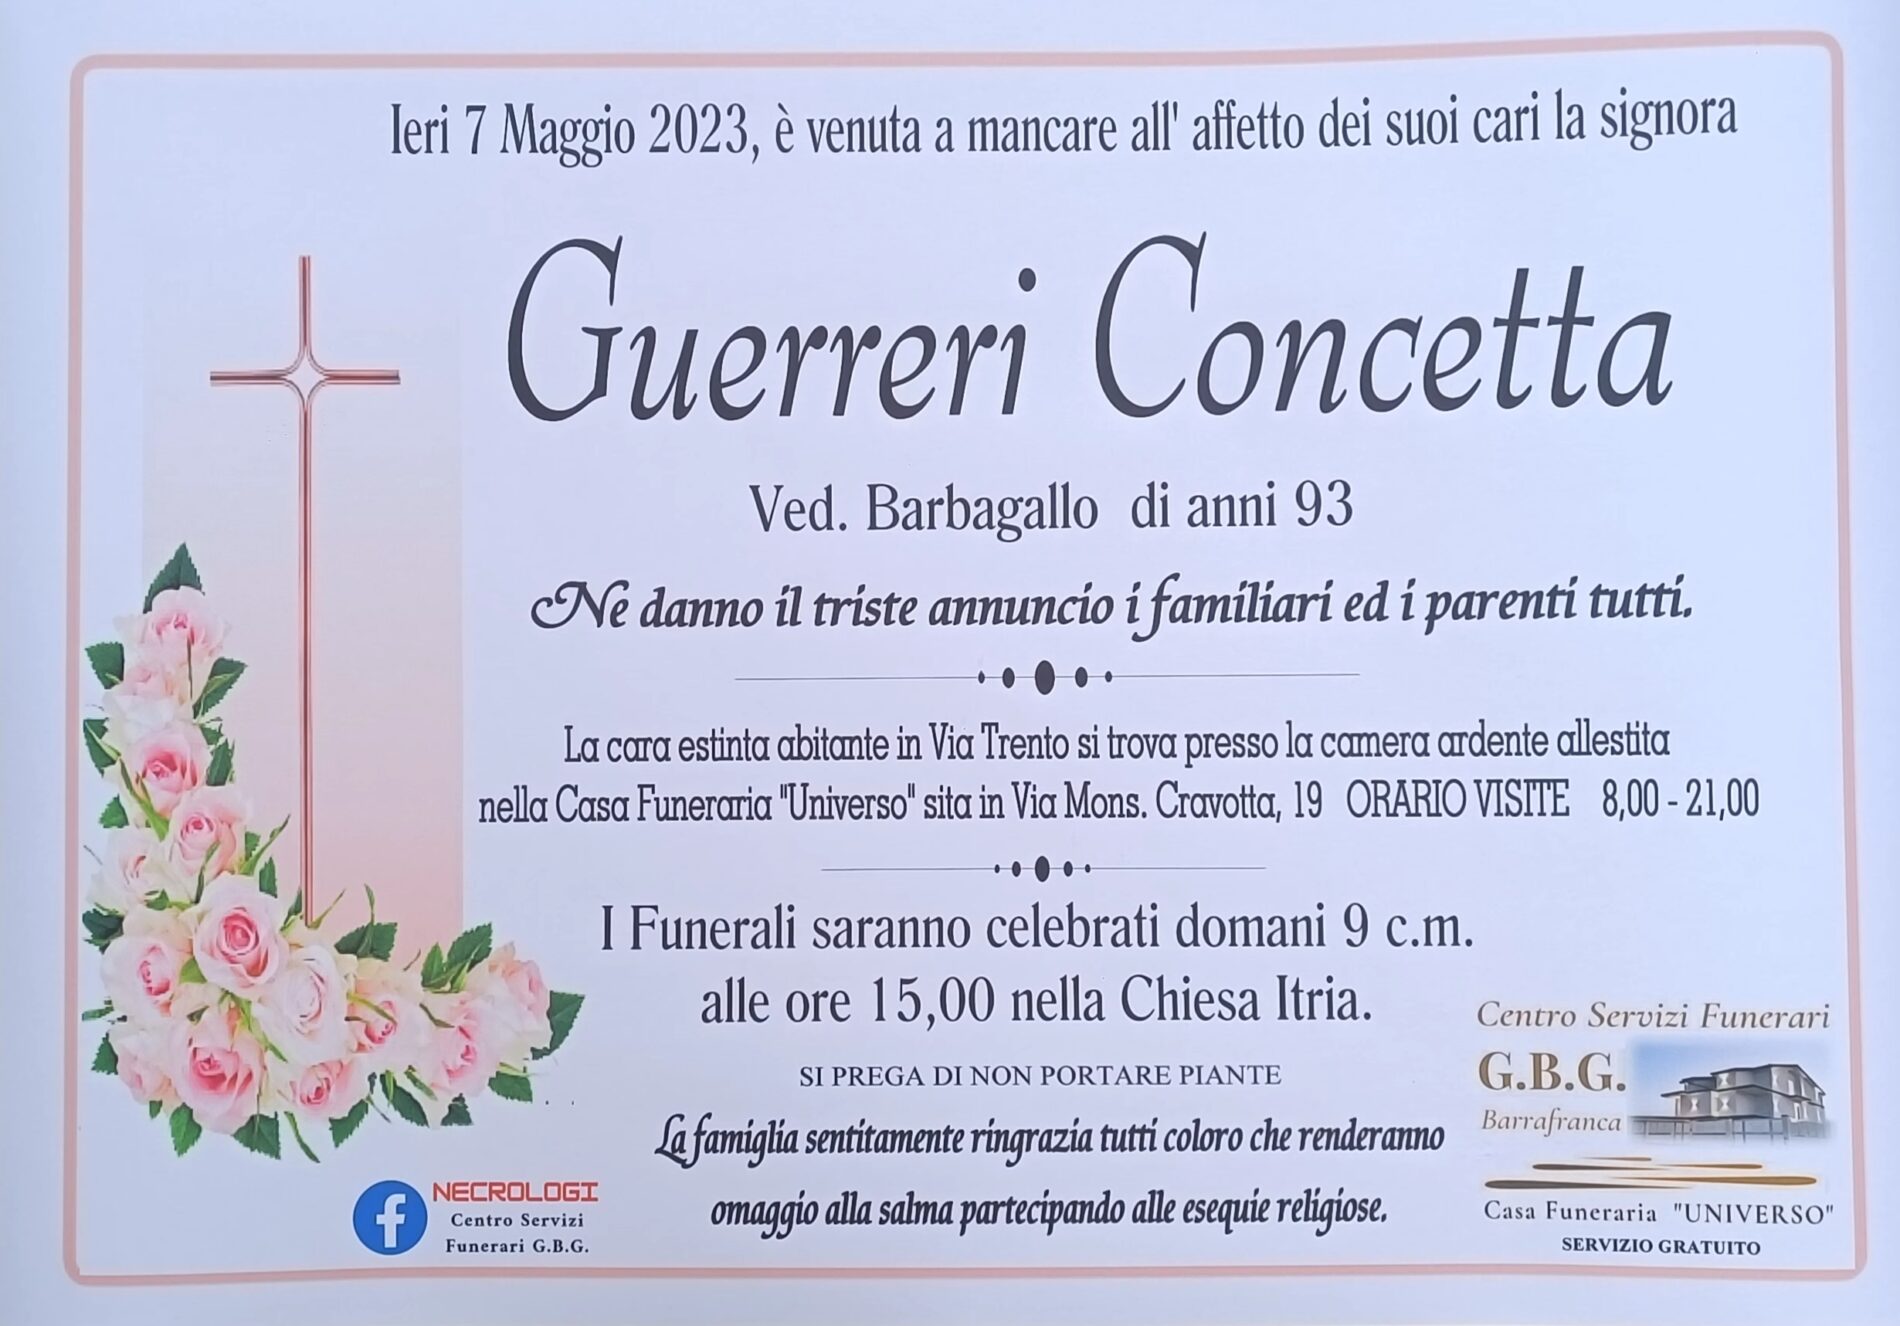 Annuncio funebre agenzia G.B.G. signora Guerreri Concetta ved  Barbagallo di anni 93